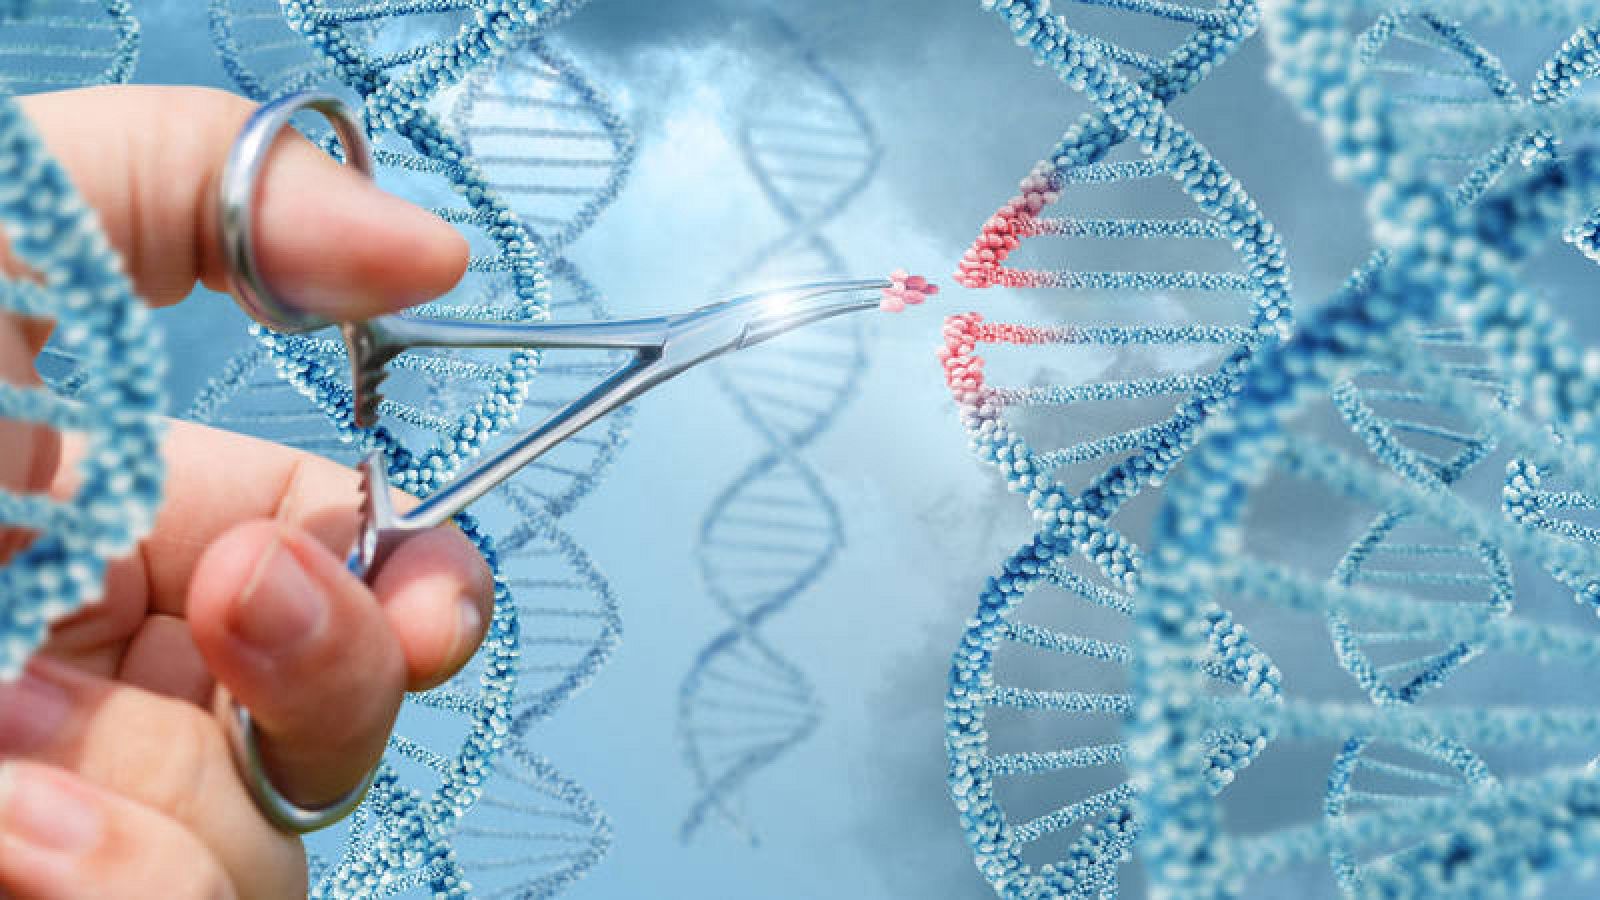 La tecnología CRISPR es una herramienta de edición genética que actúa como unas tijeras moleculares capaces de cortar secuencias de ADN del genoma.